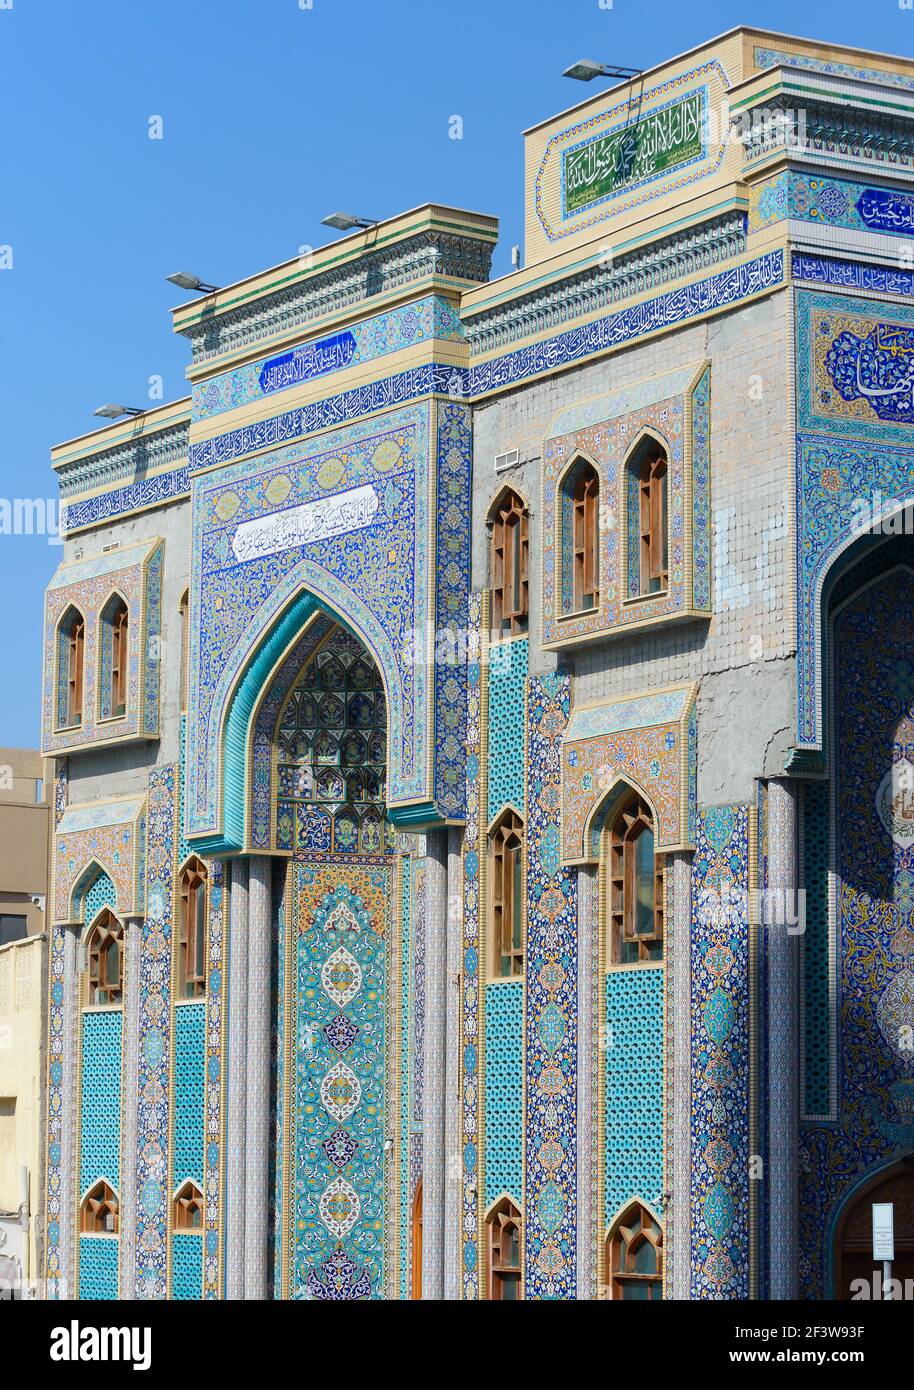 Ali ibn Abi Talib iranische Moschee in Bur Dubai. Eine schiitische iranische Moschee Hosainia in Dubai, Vereinigte Arabische Emirate. Moschee im persischen Stil. Stockfoto